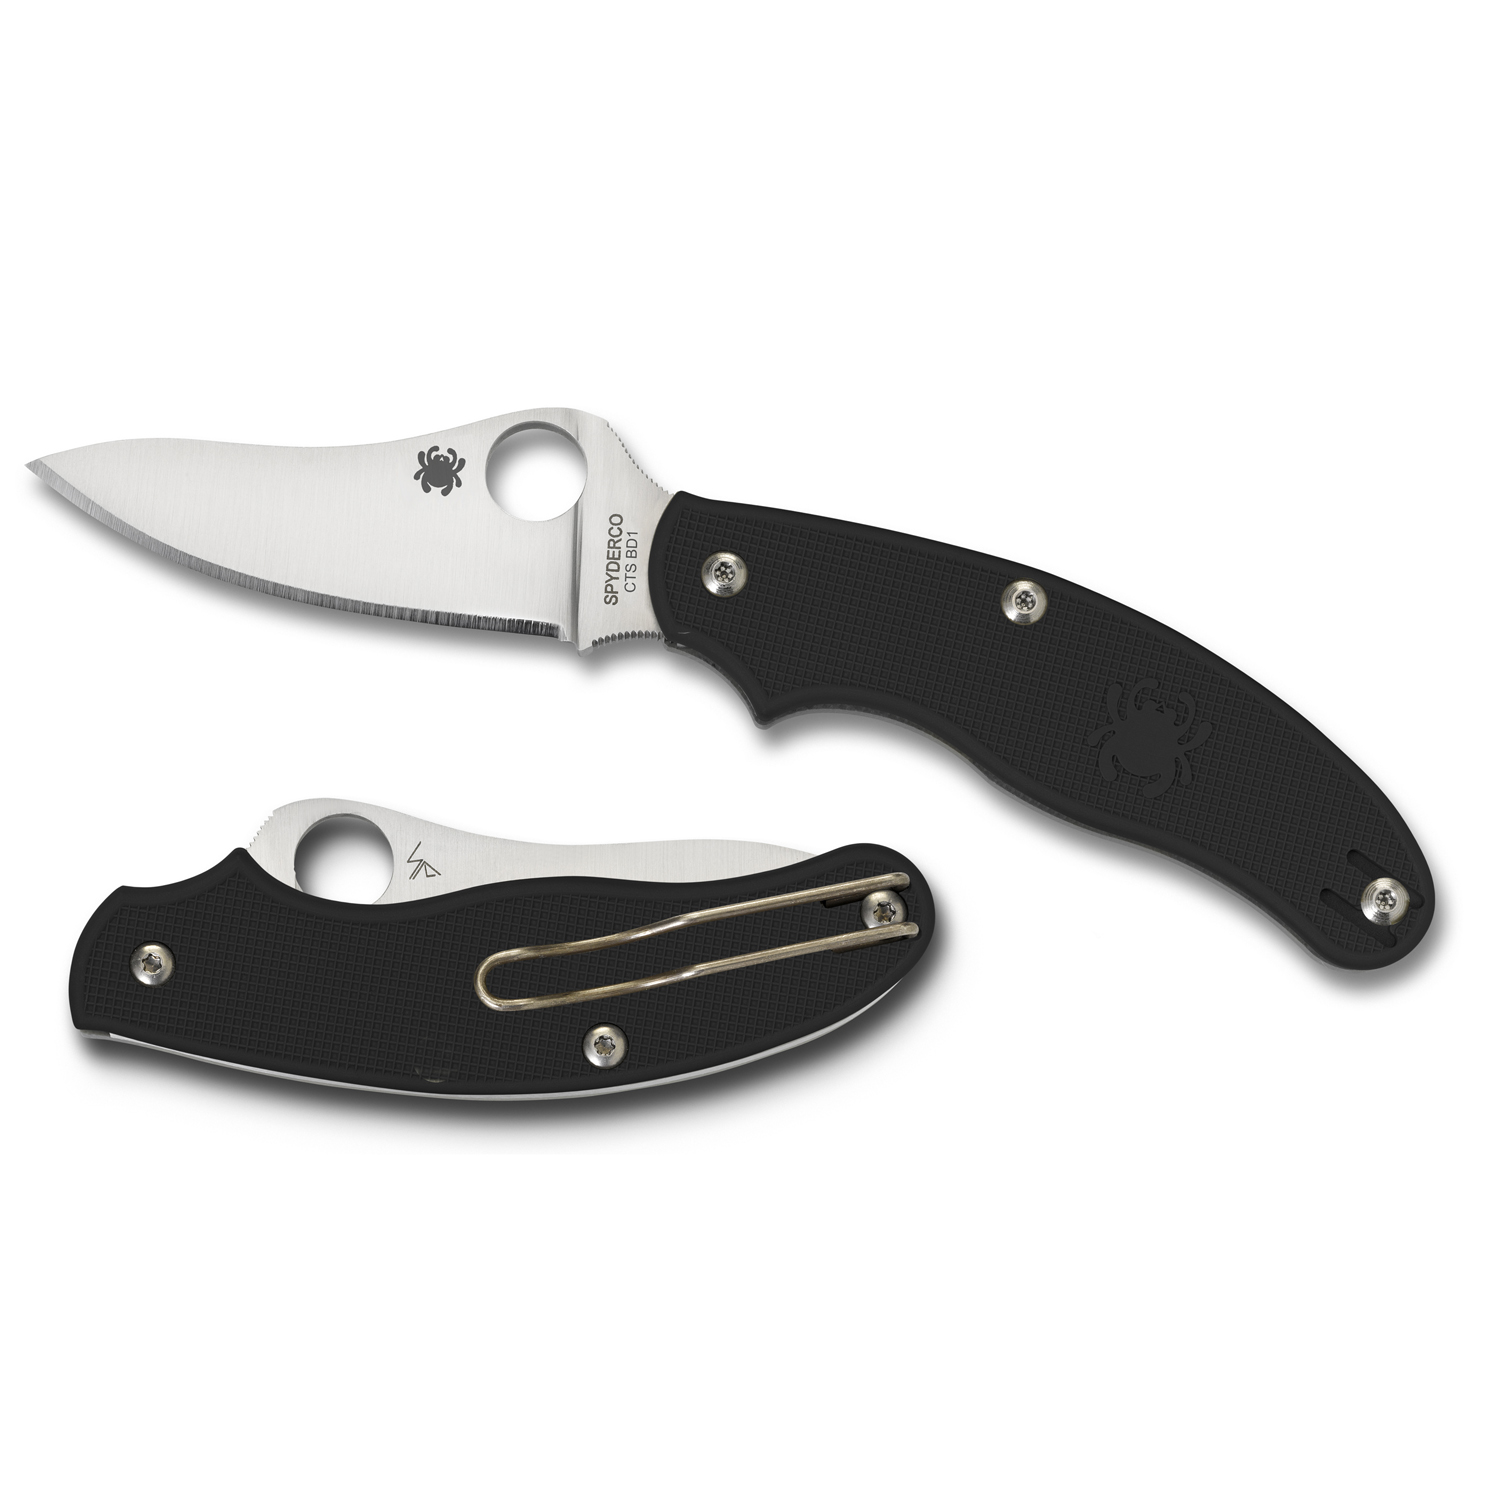 Spyderco UK Penknife Black FRN Drop Point PlainEdge Knife